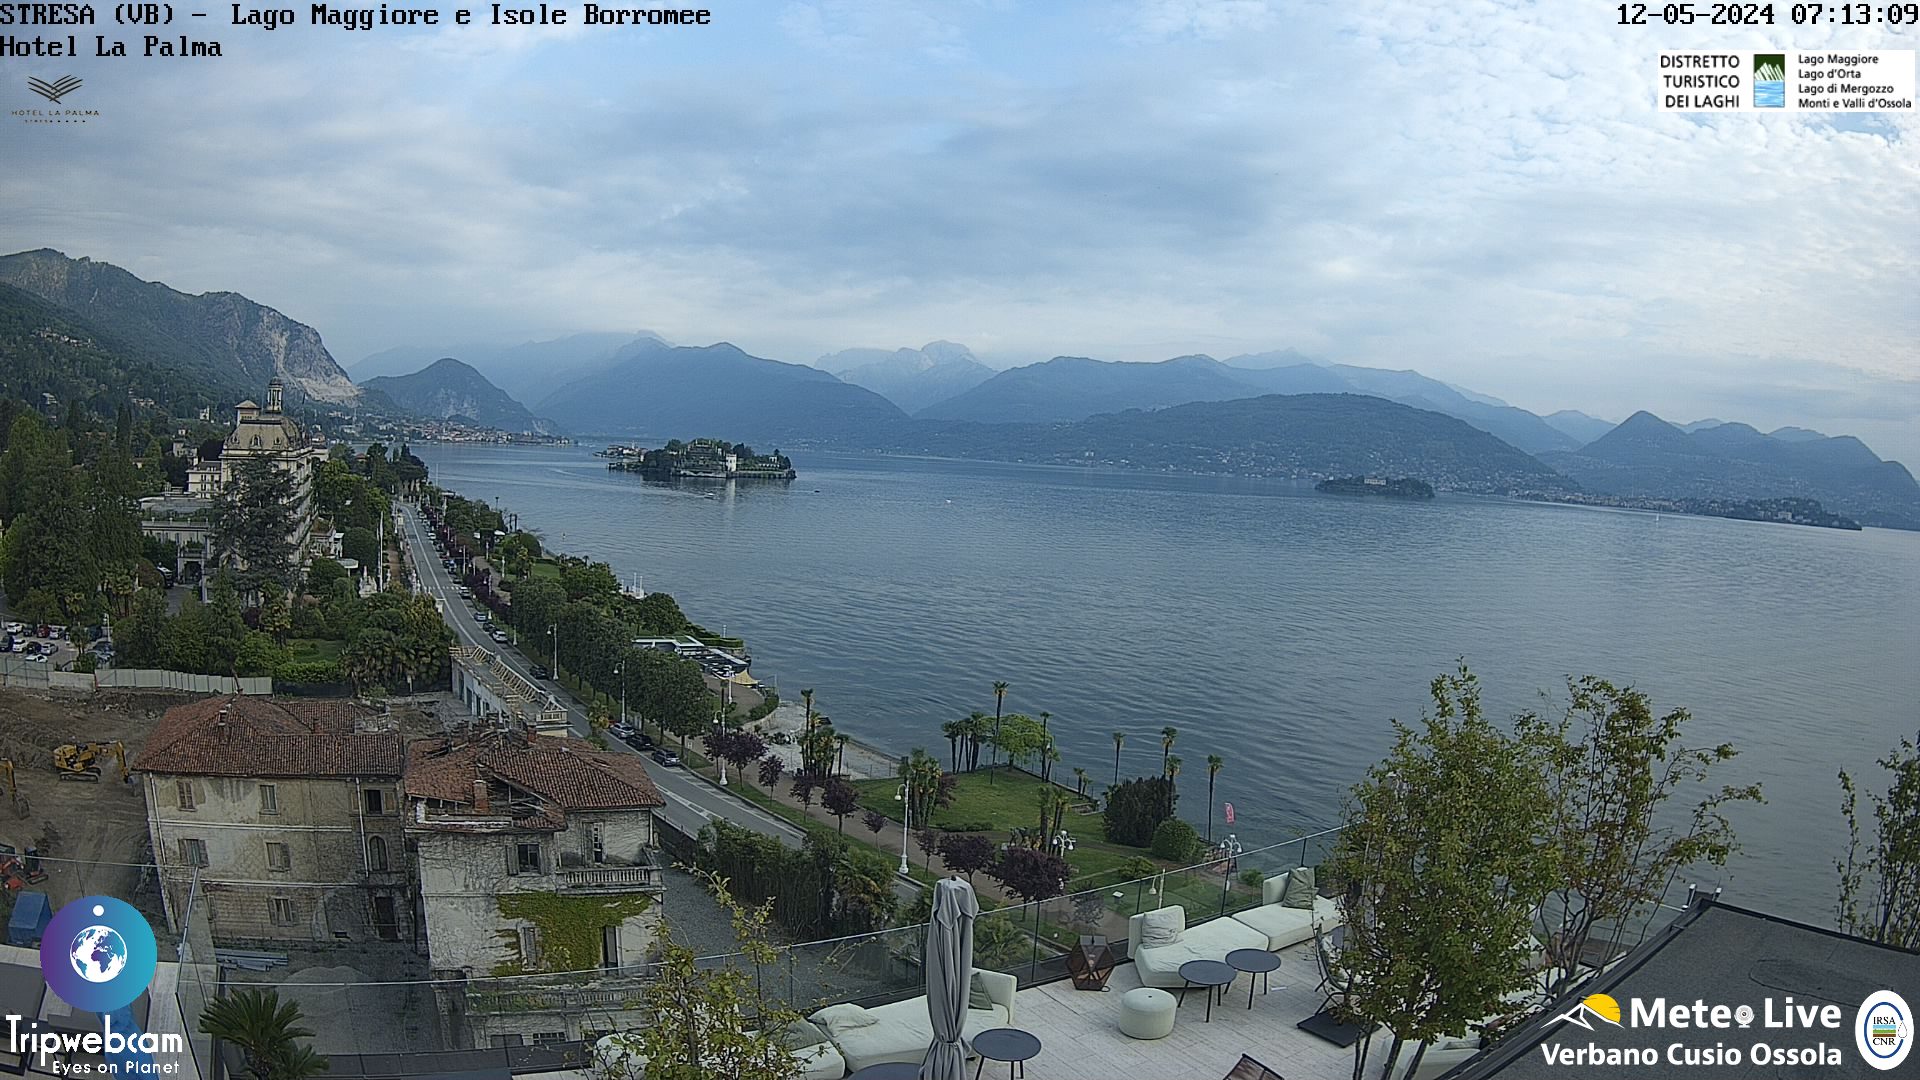 Stresa (Lago Maggiore) Ven. 08:18